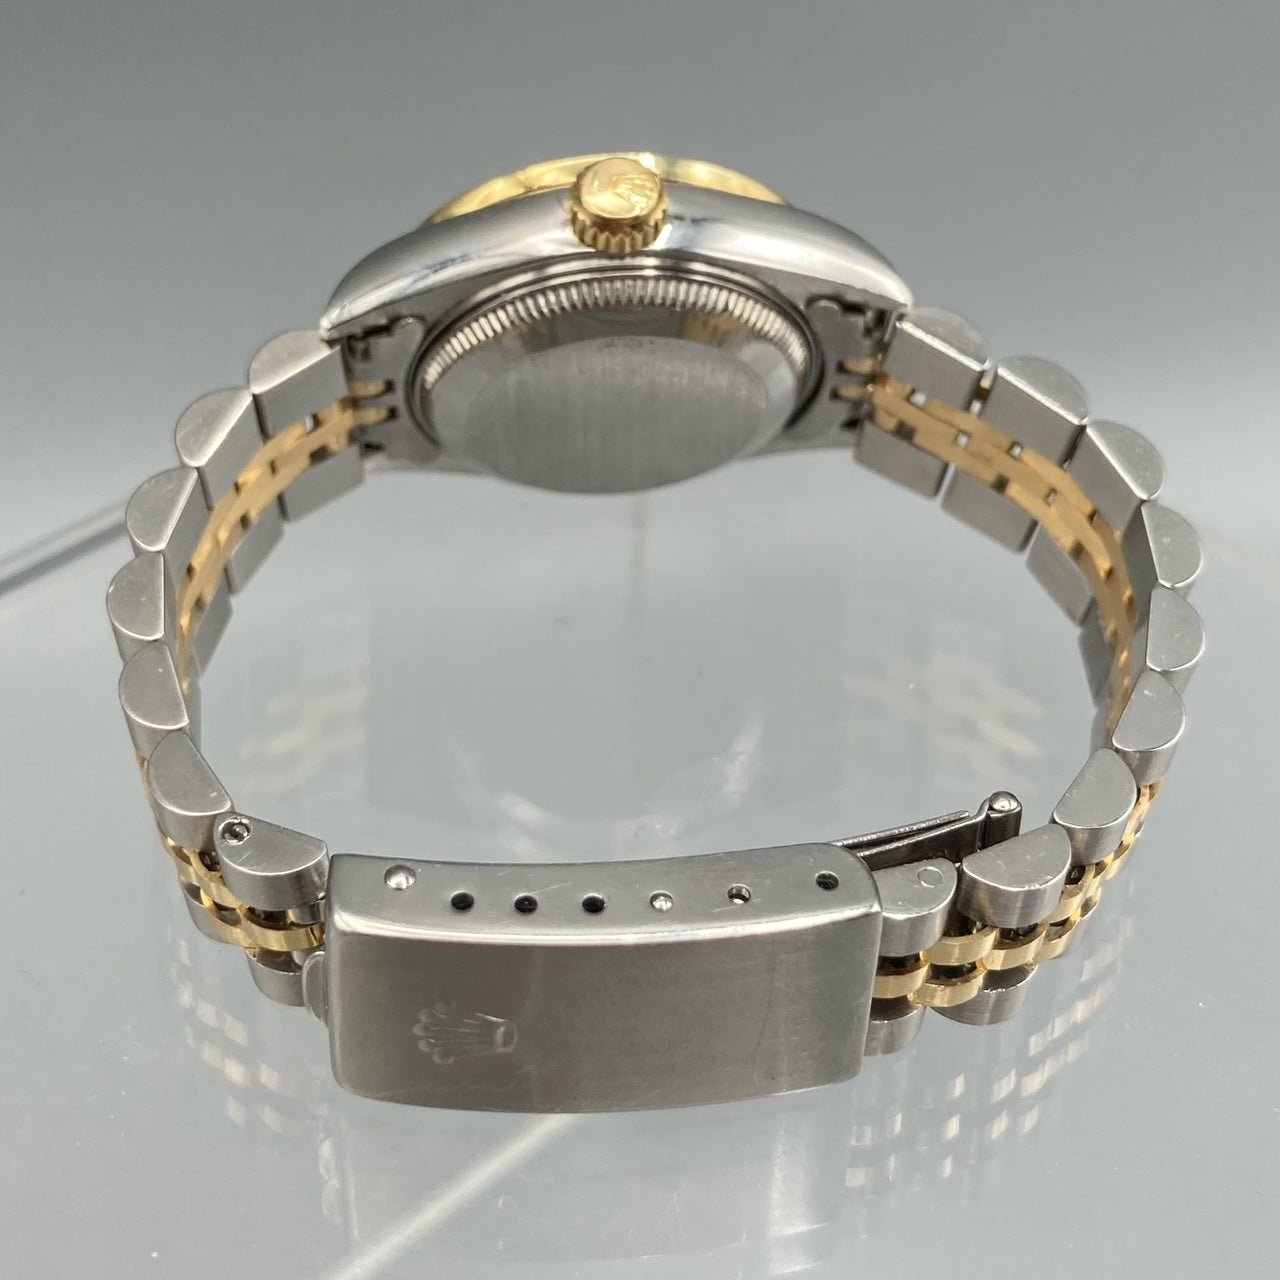 Rolex Dames Datejust Montre en or 18 carats et diamant en acier à cadran bleu 69173